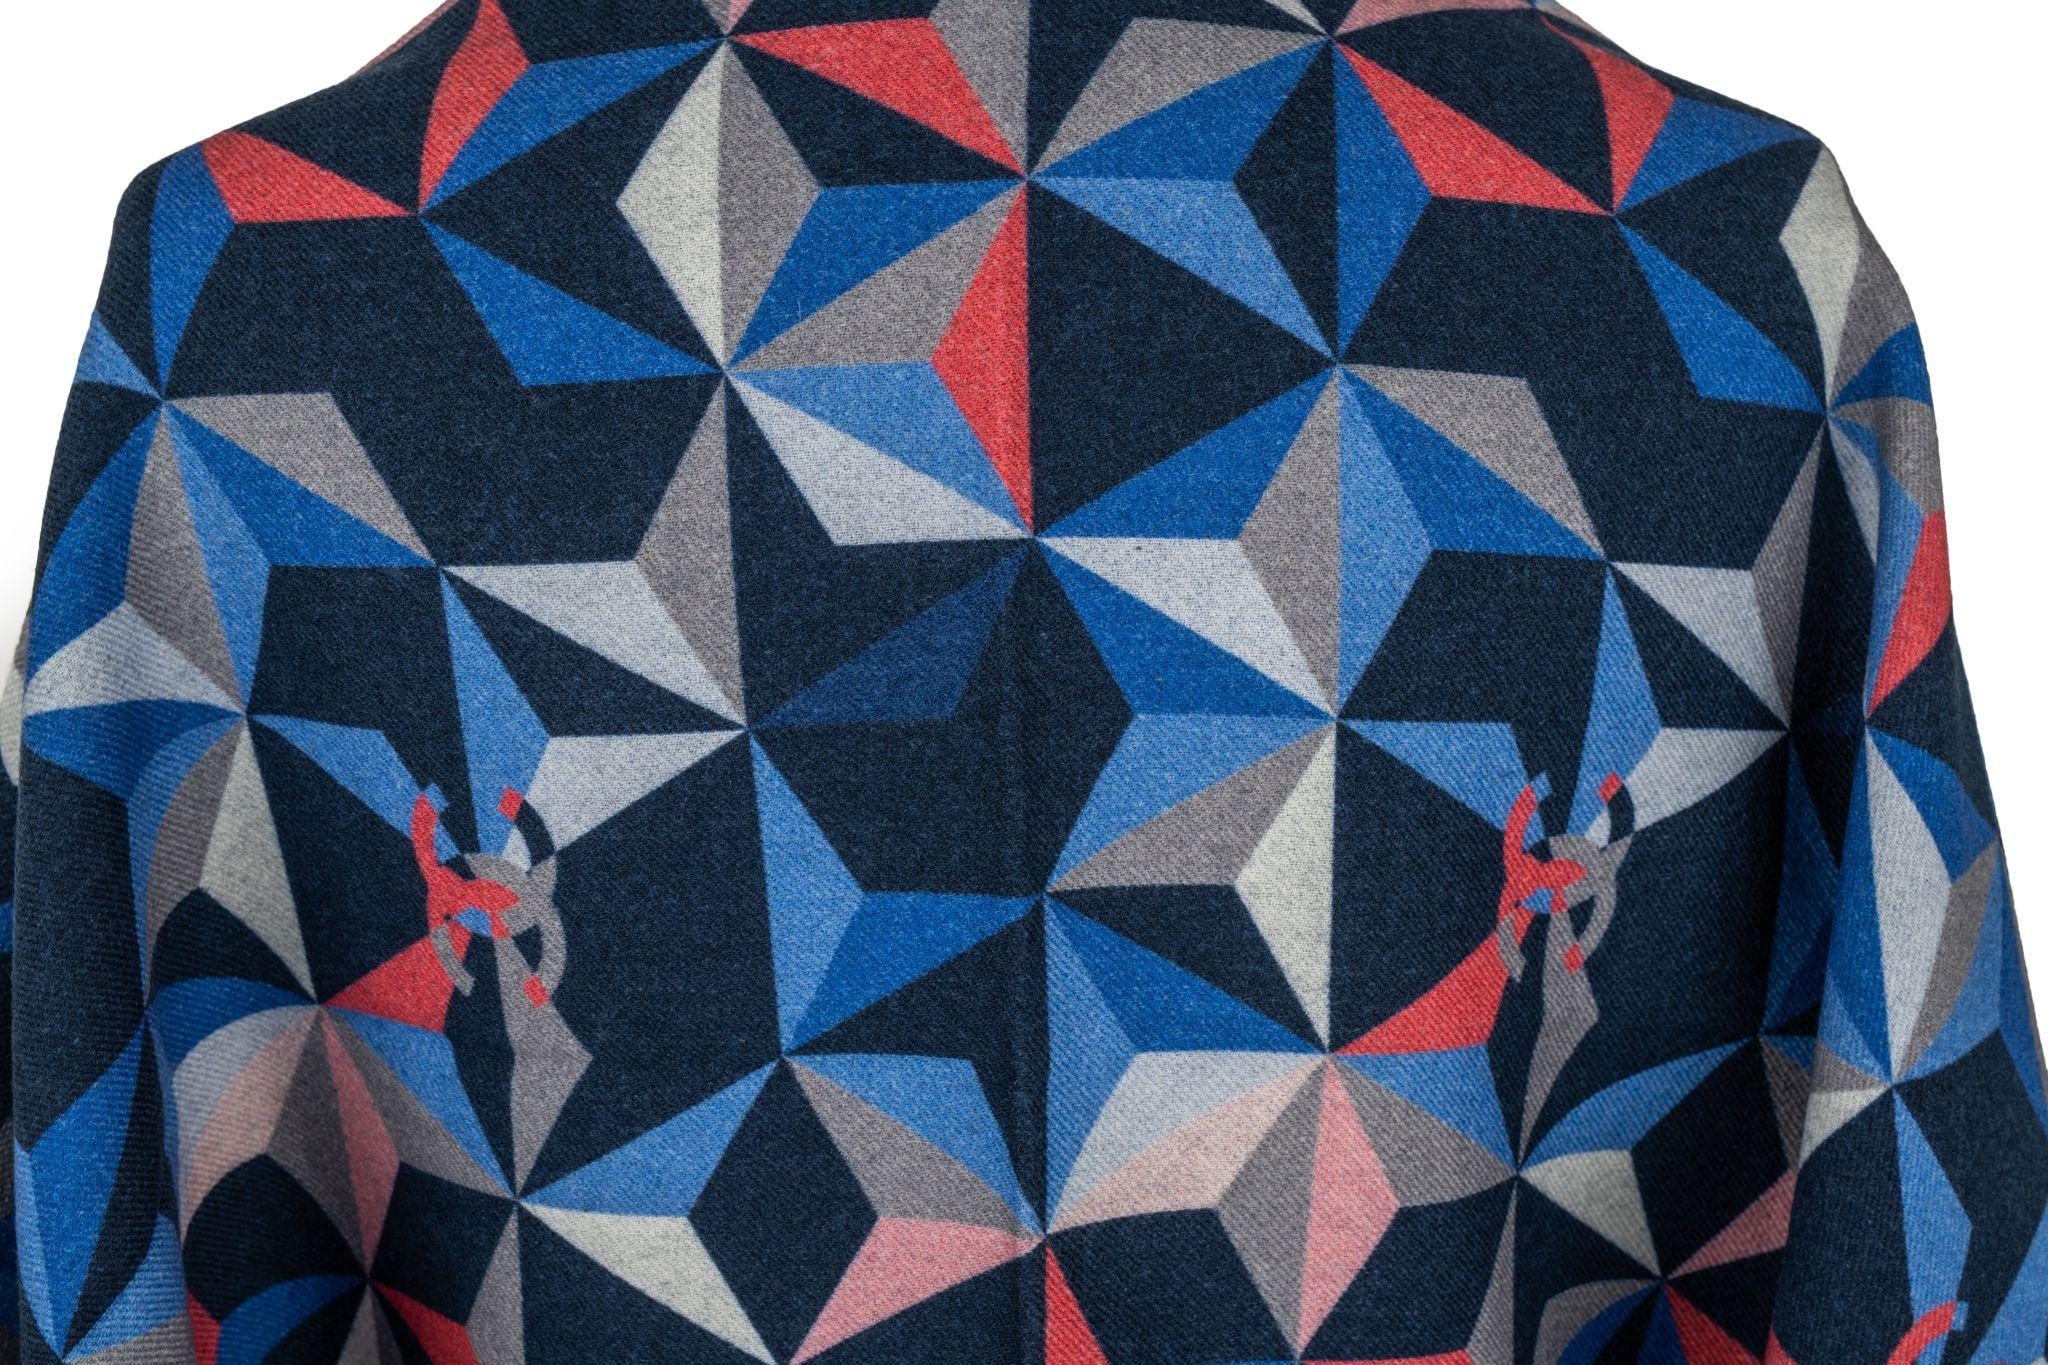 Chanel Kaschmirschal mit geometrischem Muster in Multicolor. Der Artikel ist in neuem Zustand.